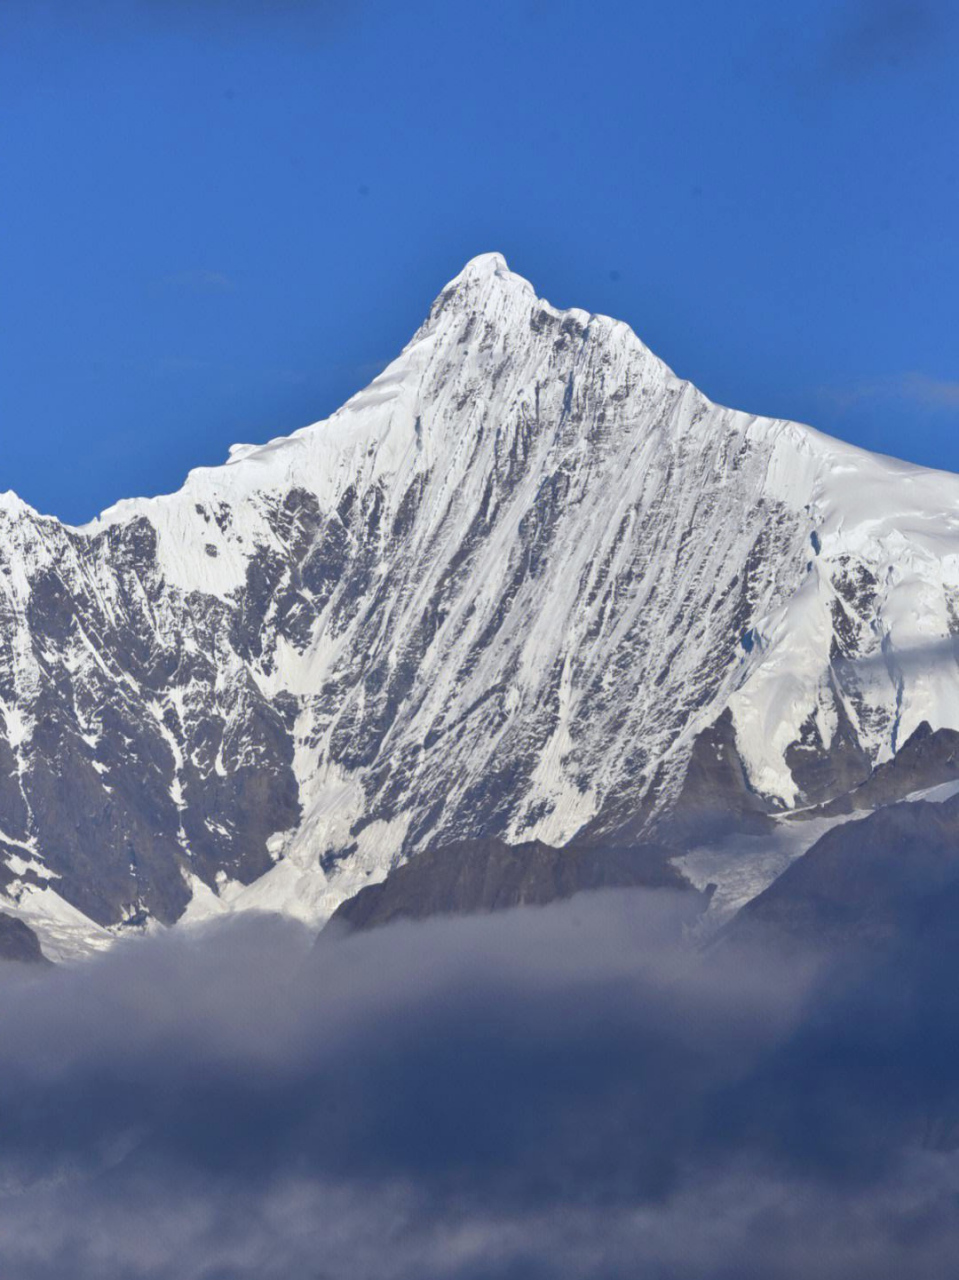 梅里雪山:雪域之巅的自然奇观  梅里雪山,坐落于云南边境,巍峨壮丽,与